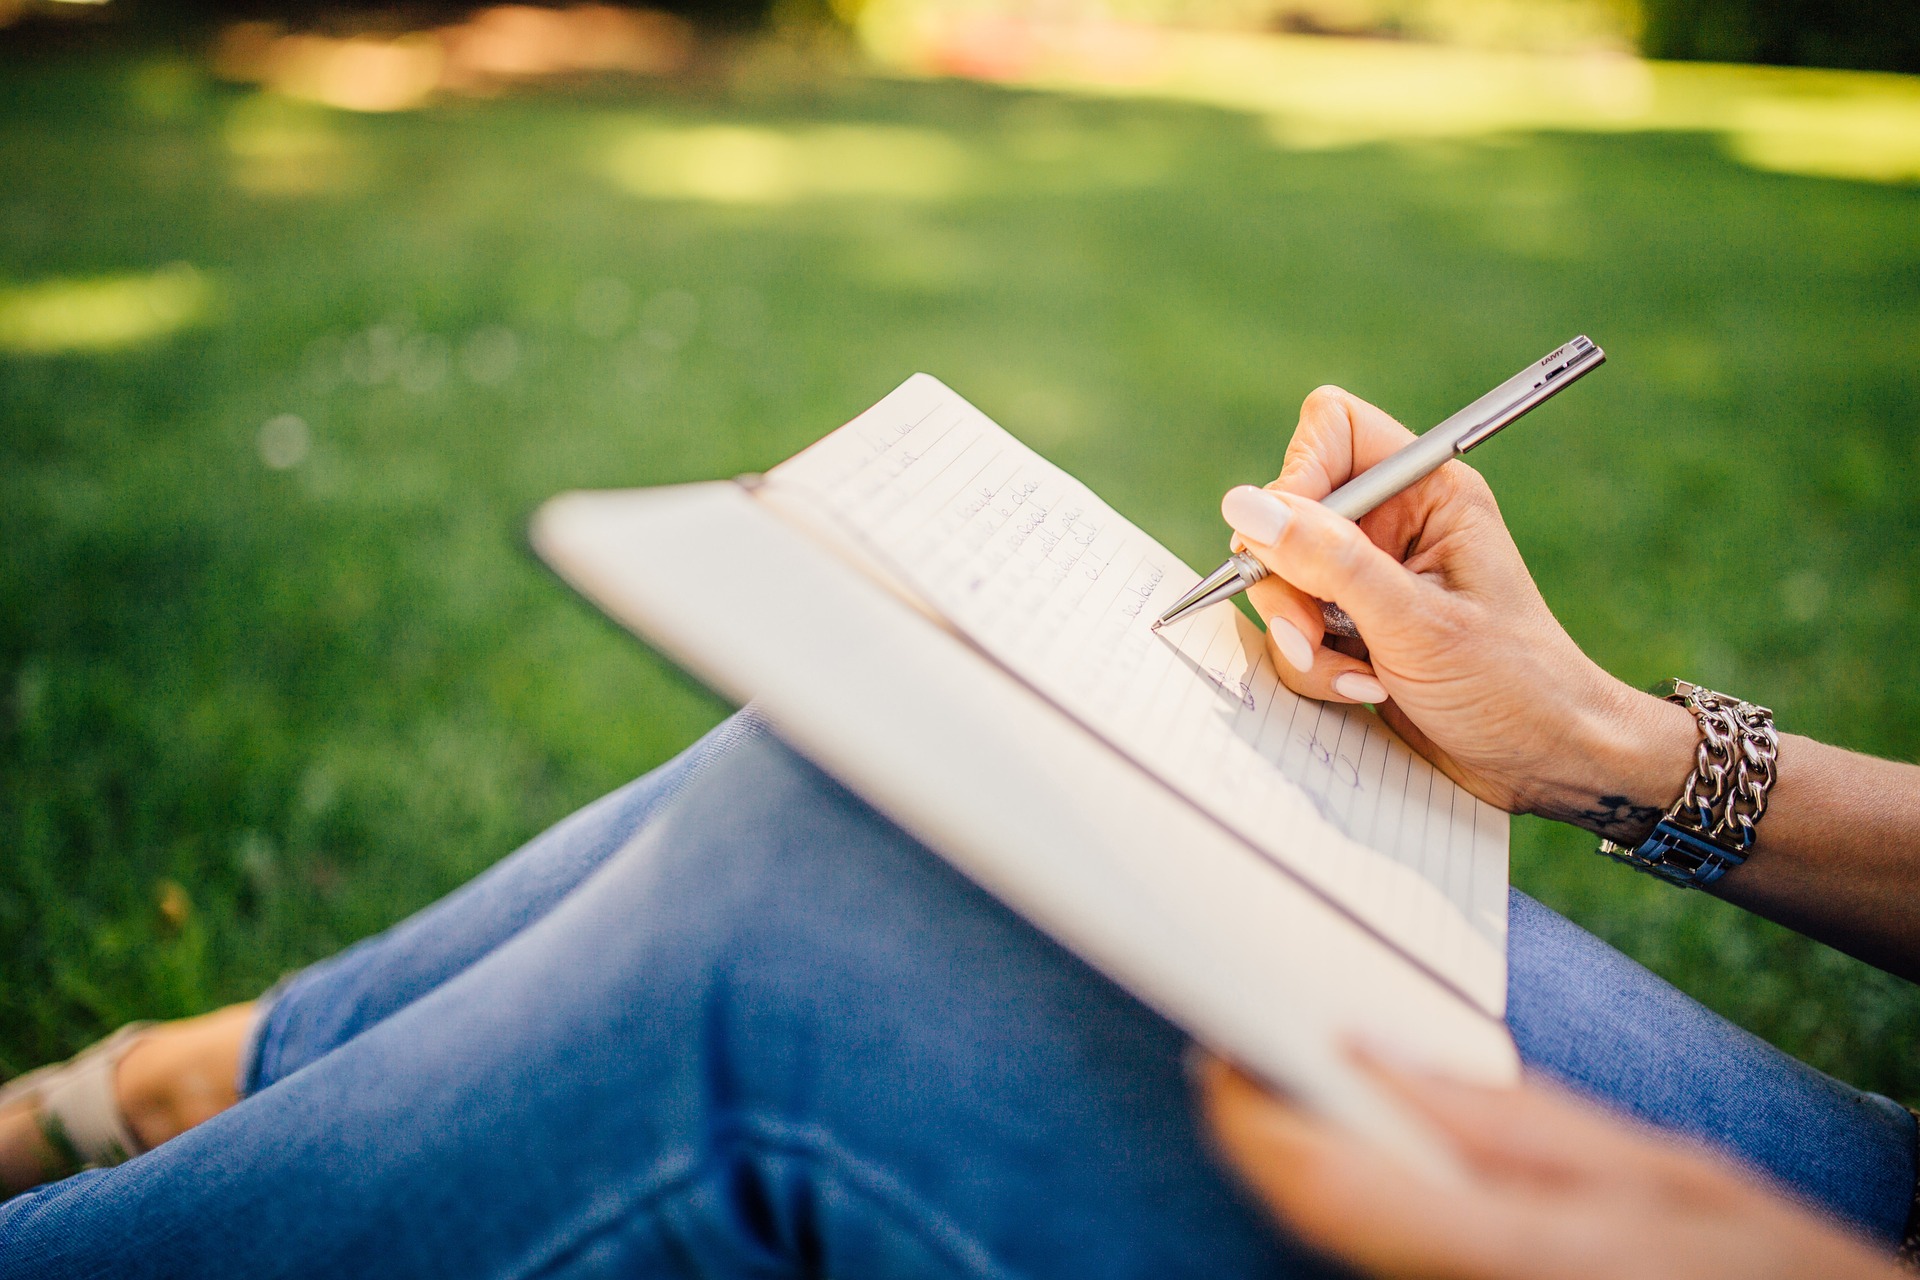 Jak napisać książkę – poradnik dla początkujących pisarzy